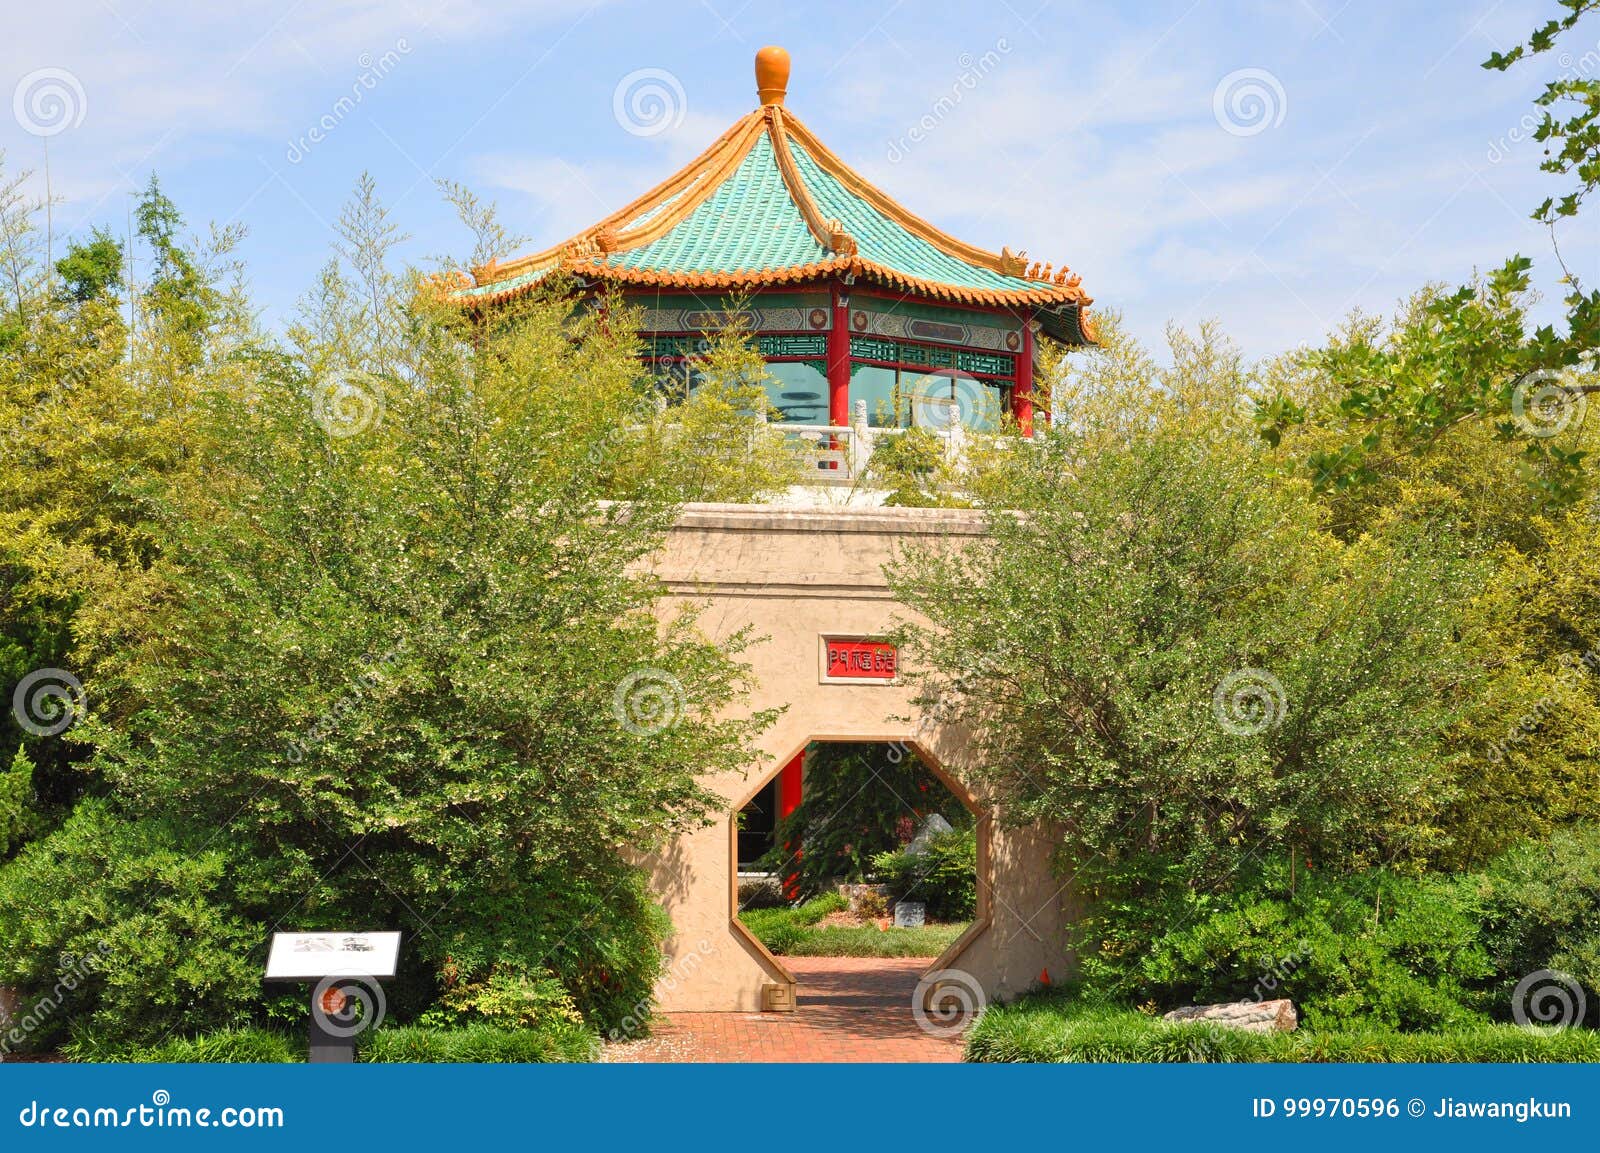 Pagoda Tea House Norfolk Va Usa Stock Photo Image Of Asian Grand 99970596